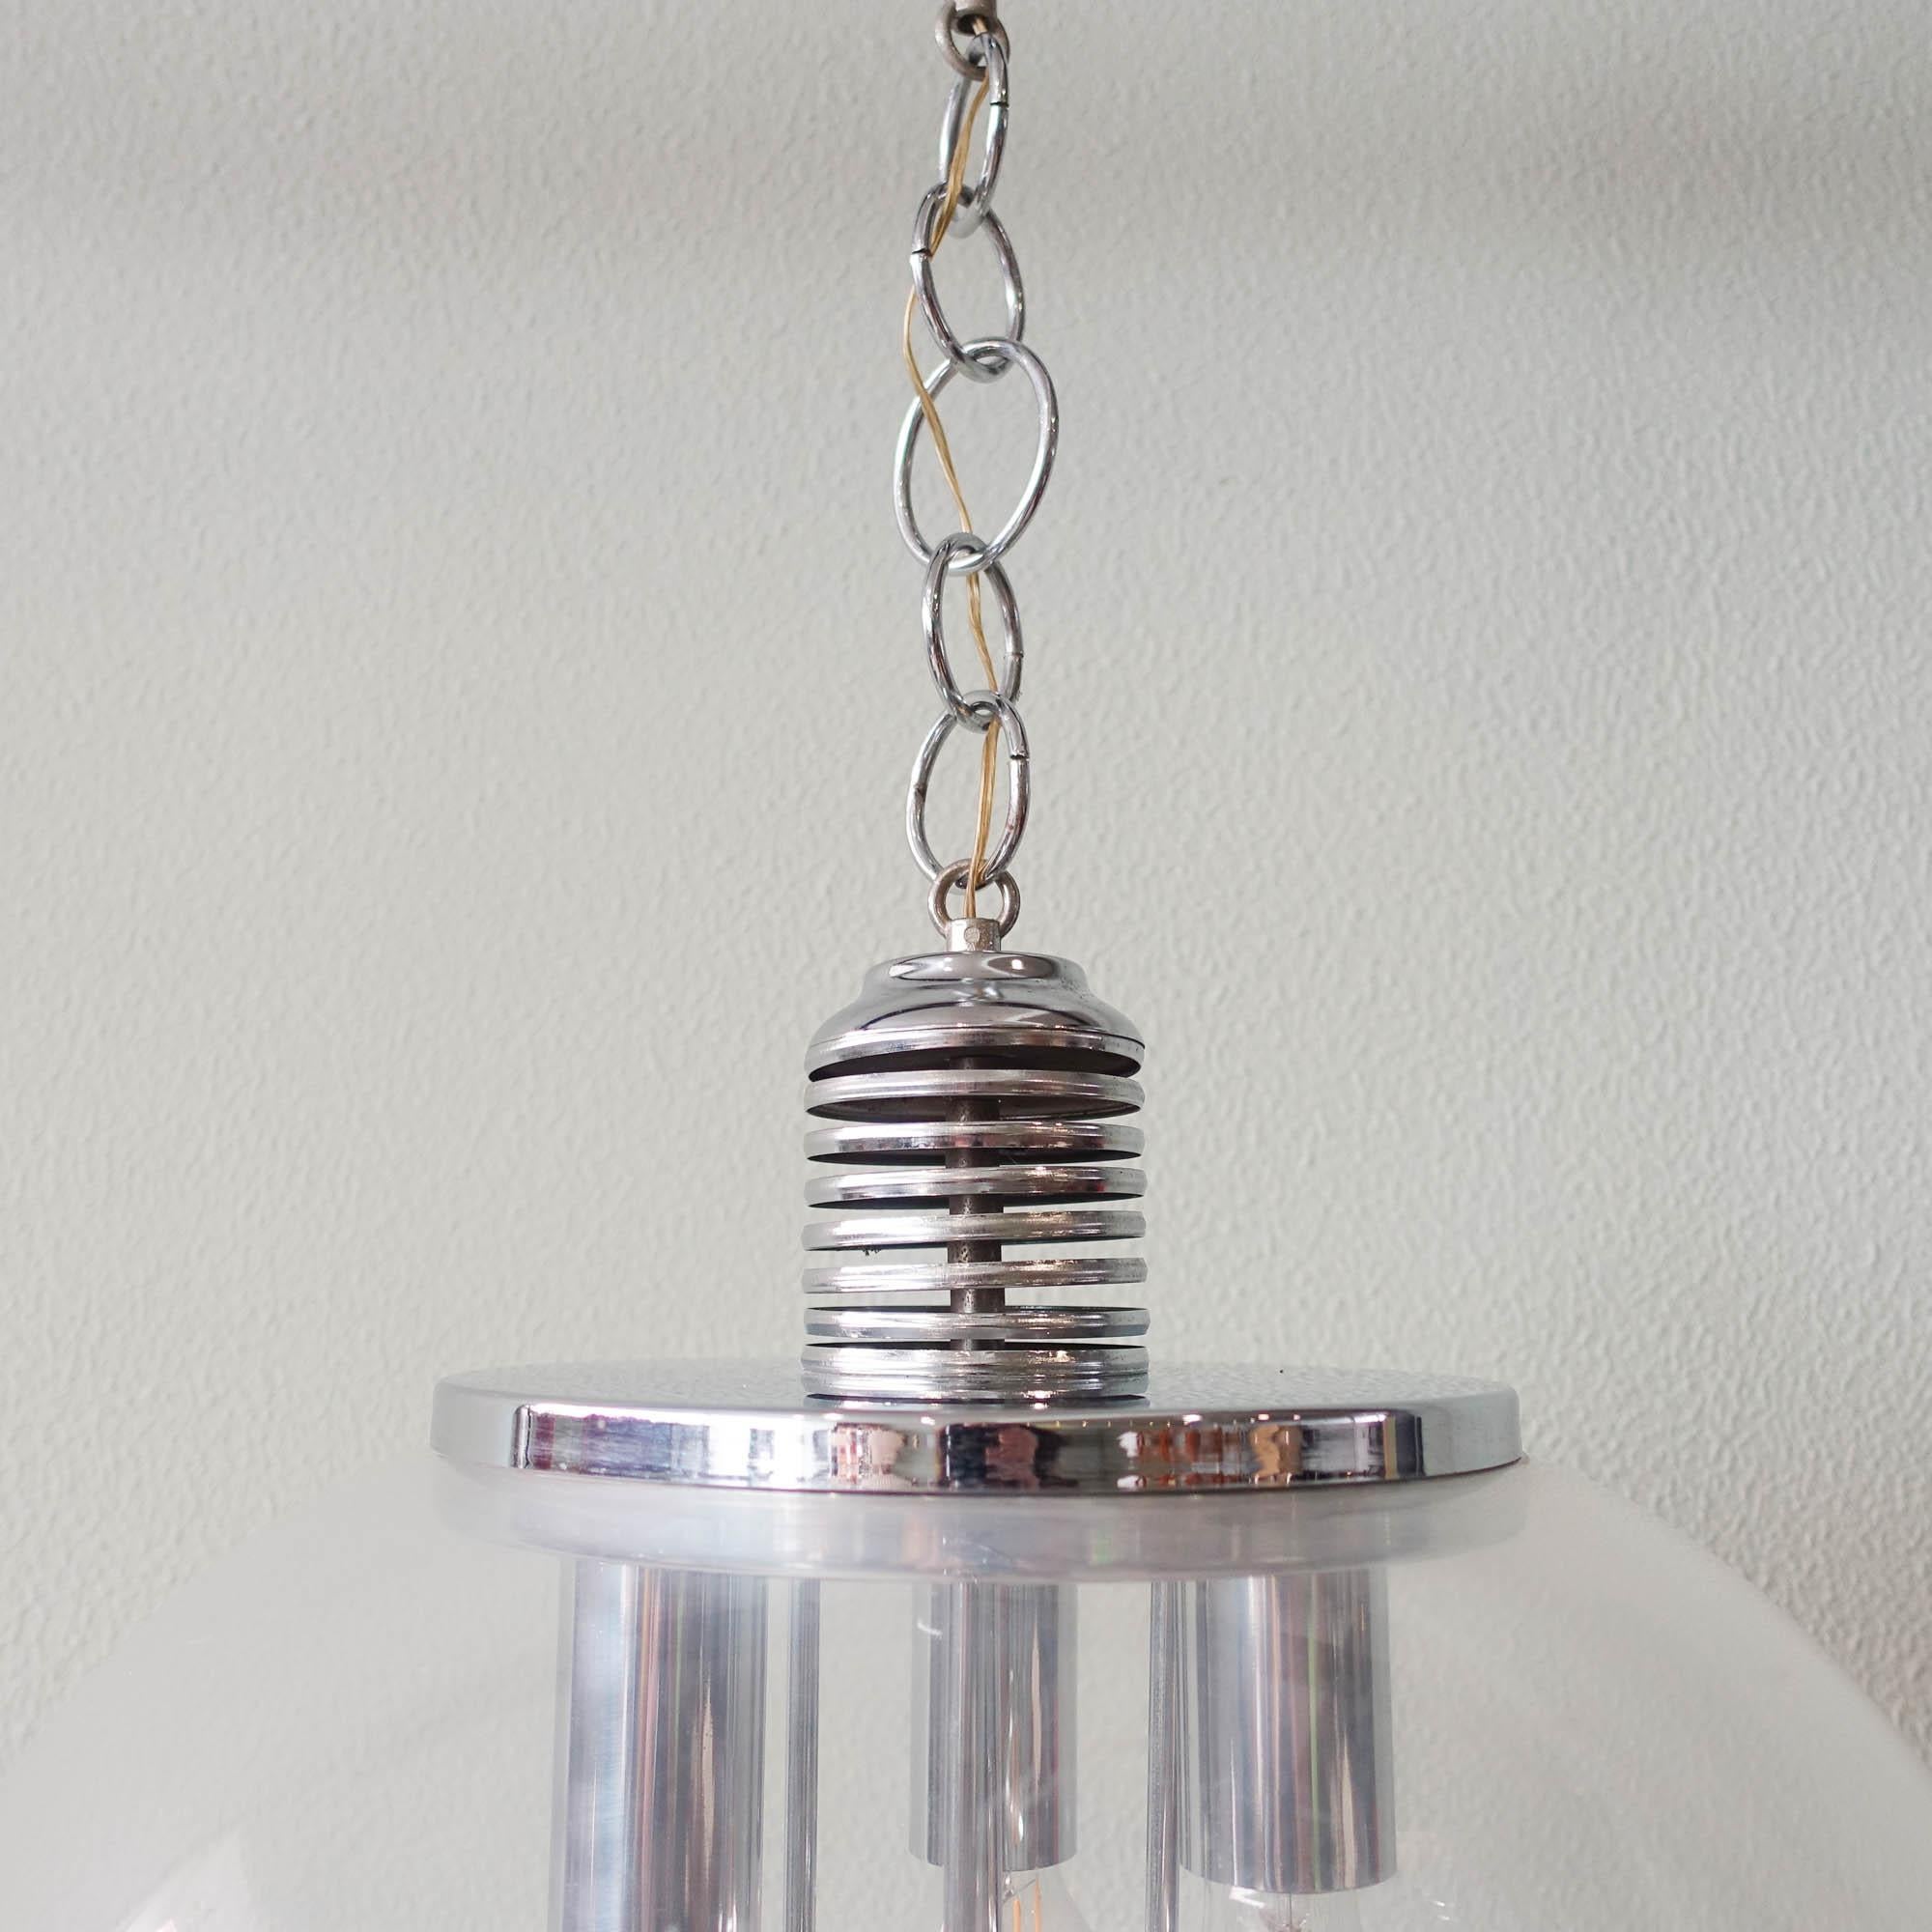 Cette lampe suspendue a été conçue et produite en Allemagne dans les années 1970. Le demi-globe est composé d'un acrylique transparent et à l'intérieur d'une partie métallique chromée avec 3 raccords E27 chromés à l'intérieur ainsi que 4 boules